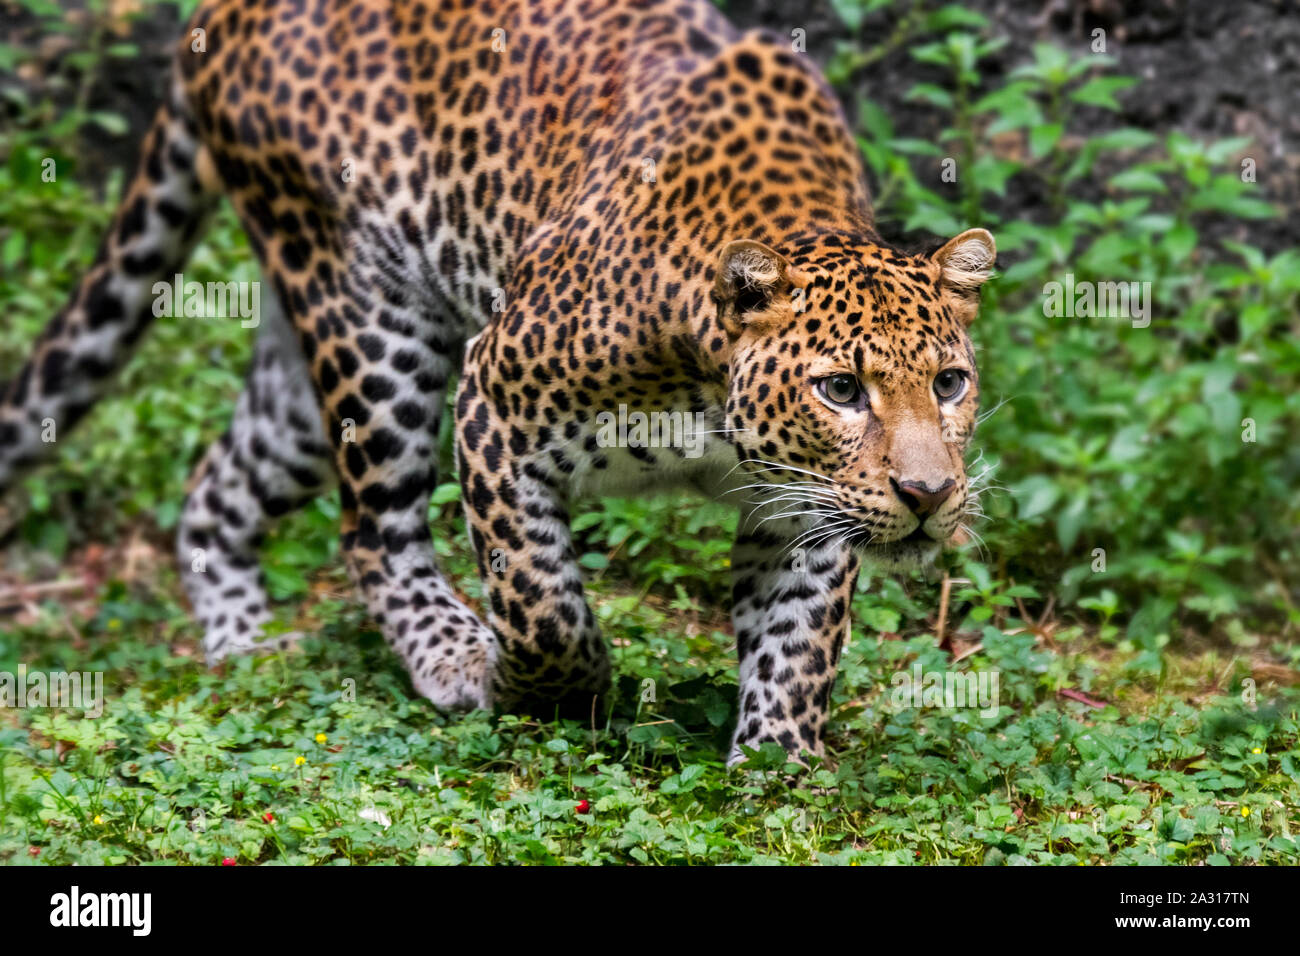 Iavan leopard (Panthera pardus melas) stalking preda nella foresta pluviale tropicale, nativo di isola indonesiana di Giava Foto Stock